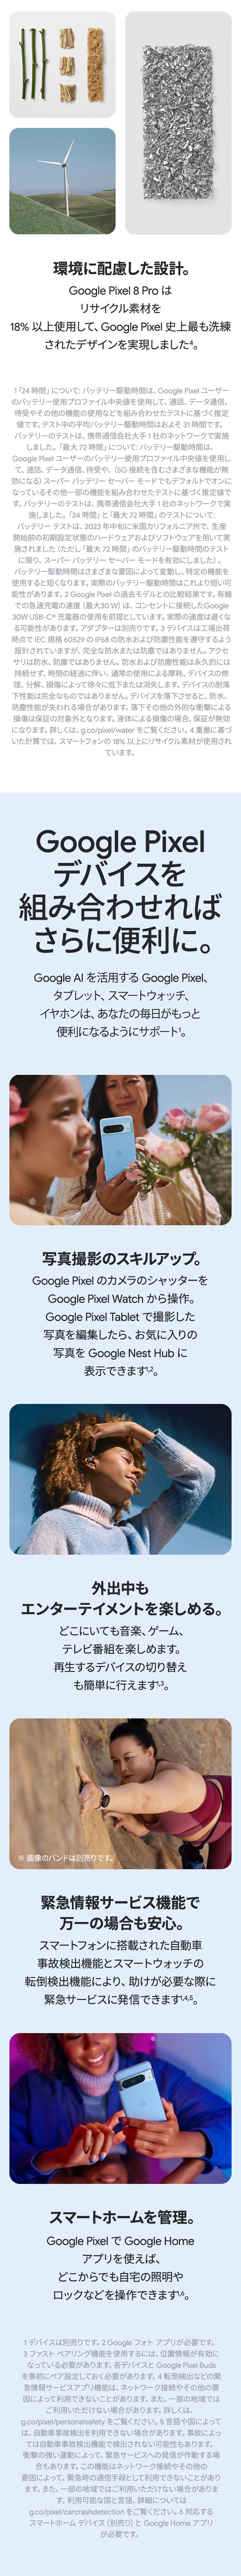 Google Pixel 8 Proの特長画像